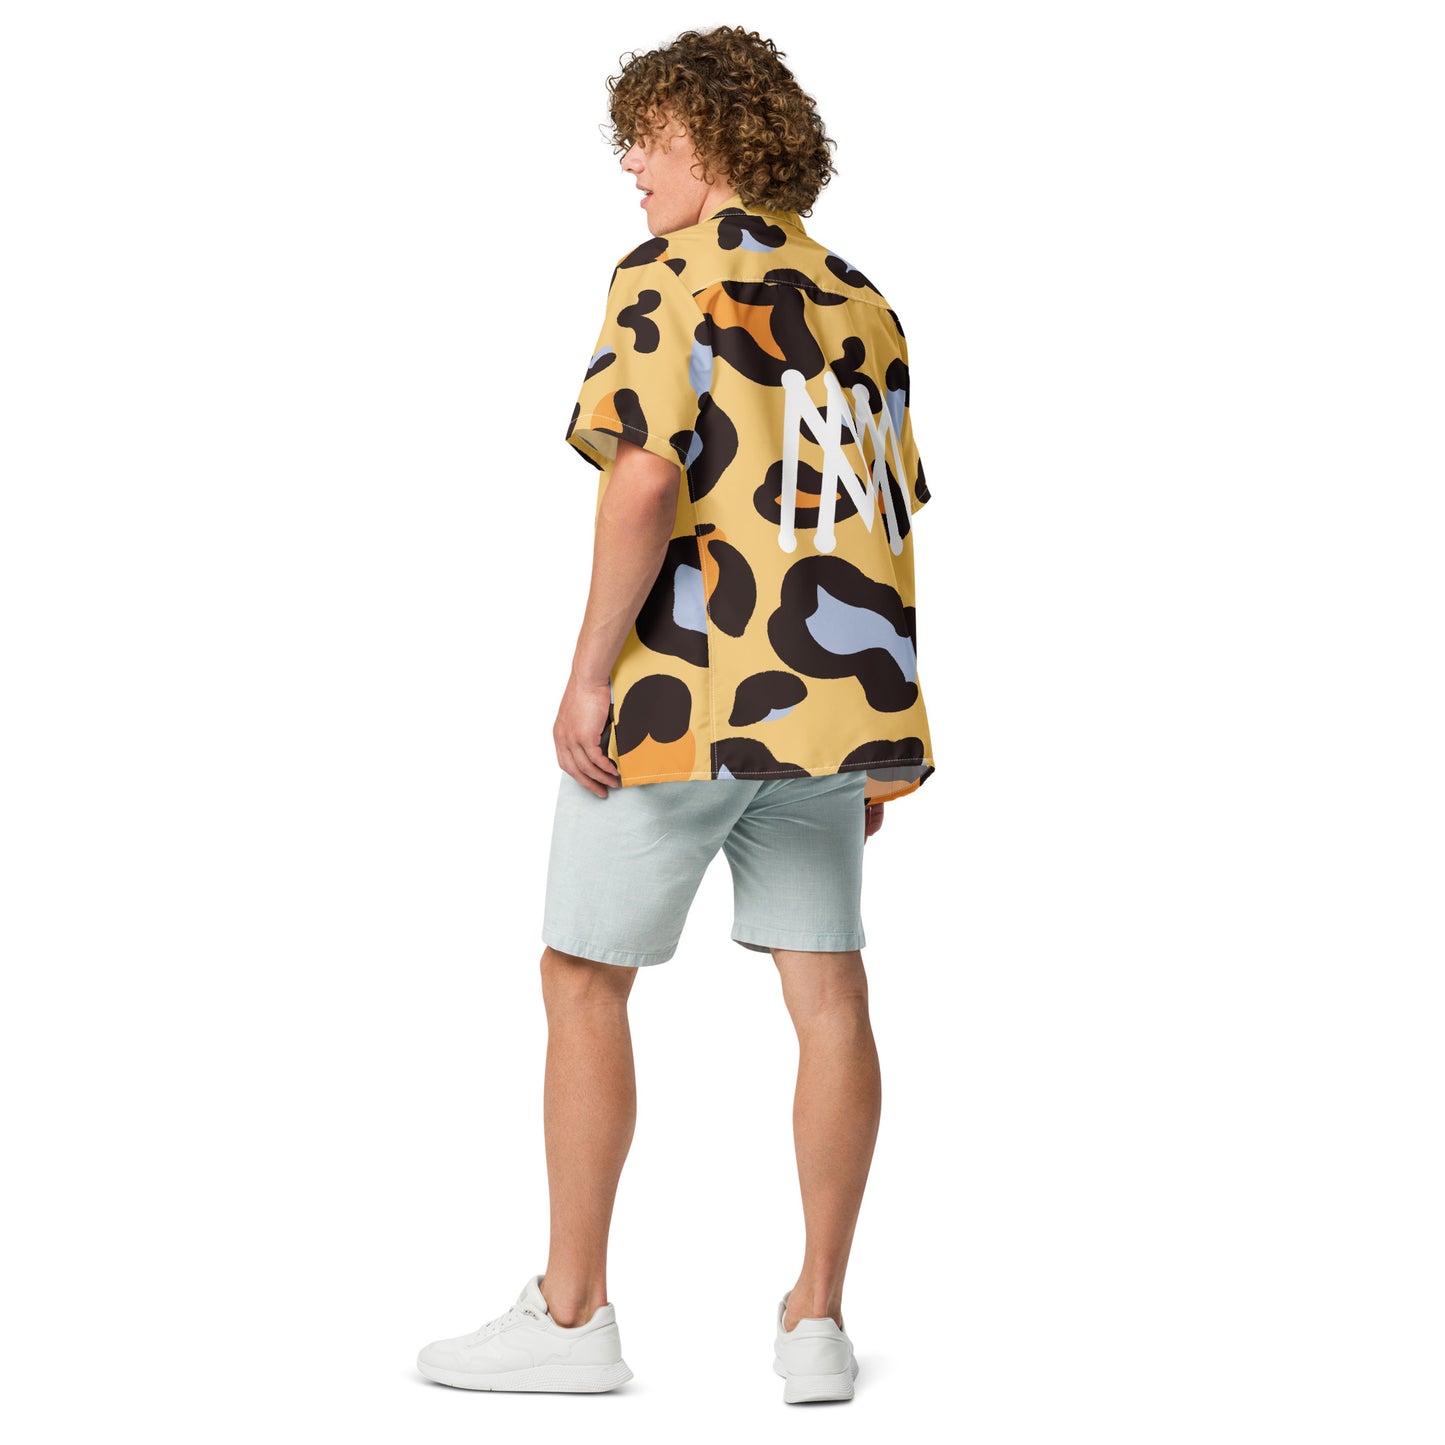 Cheetah Button-up Shirt